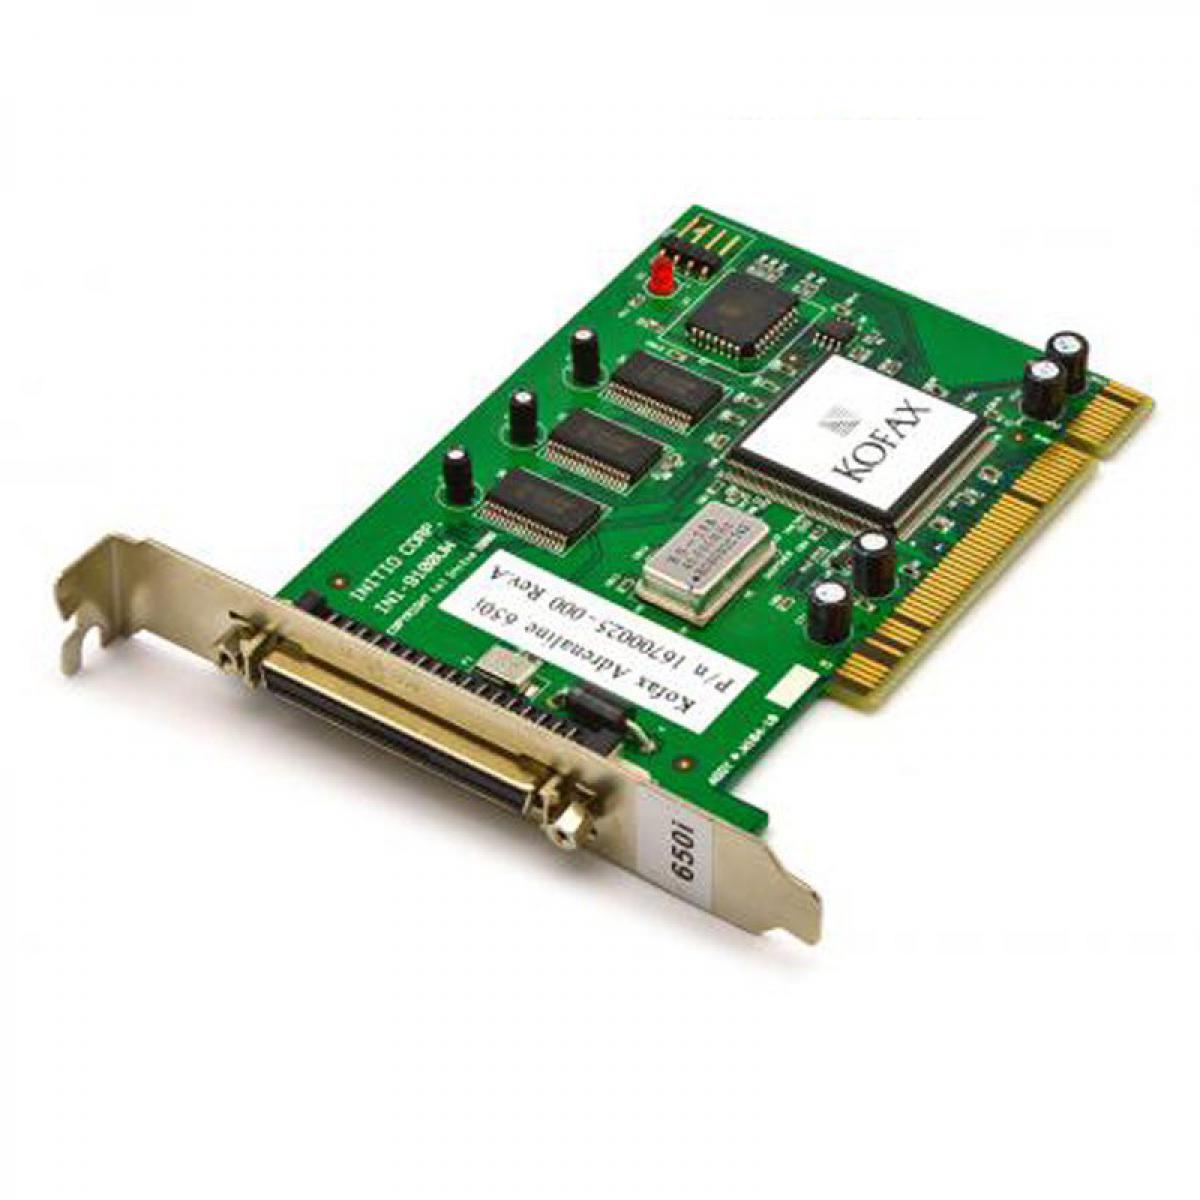 Kofax - Carte contrôleur SCSI KOFAX Adrenaline 650 INI-9100UW PCI 16700020-000 - Carte réseau